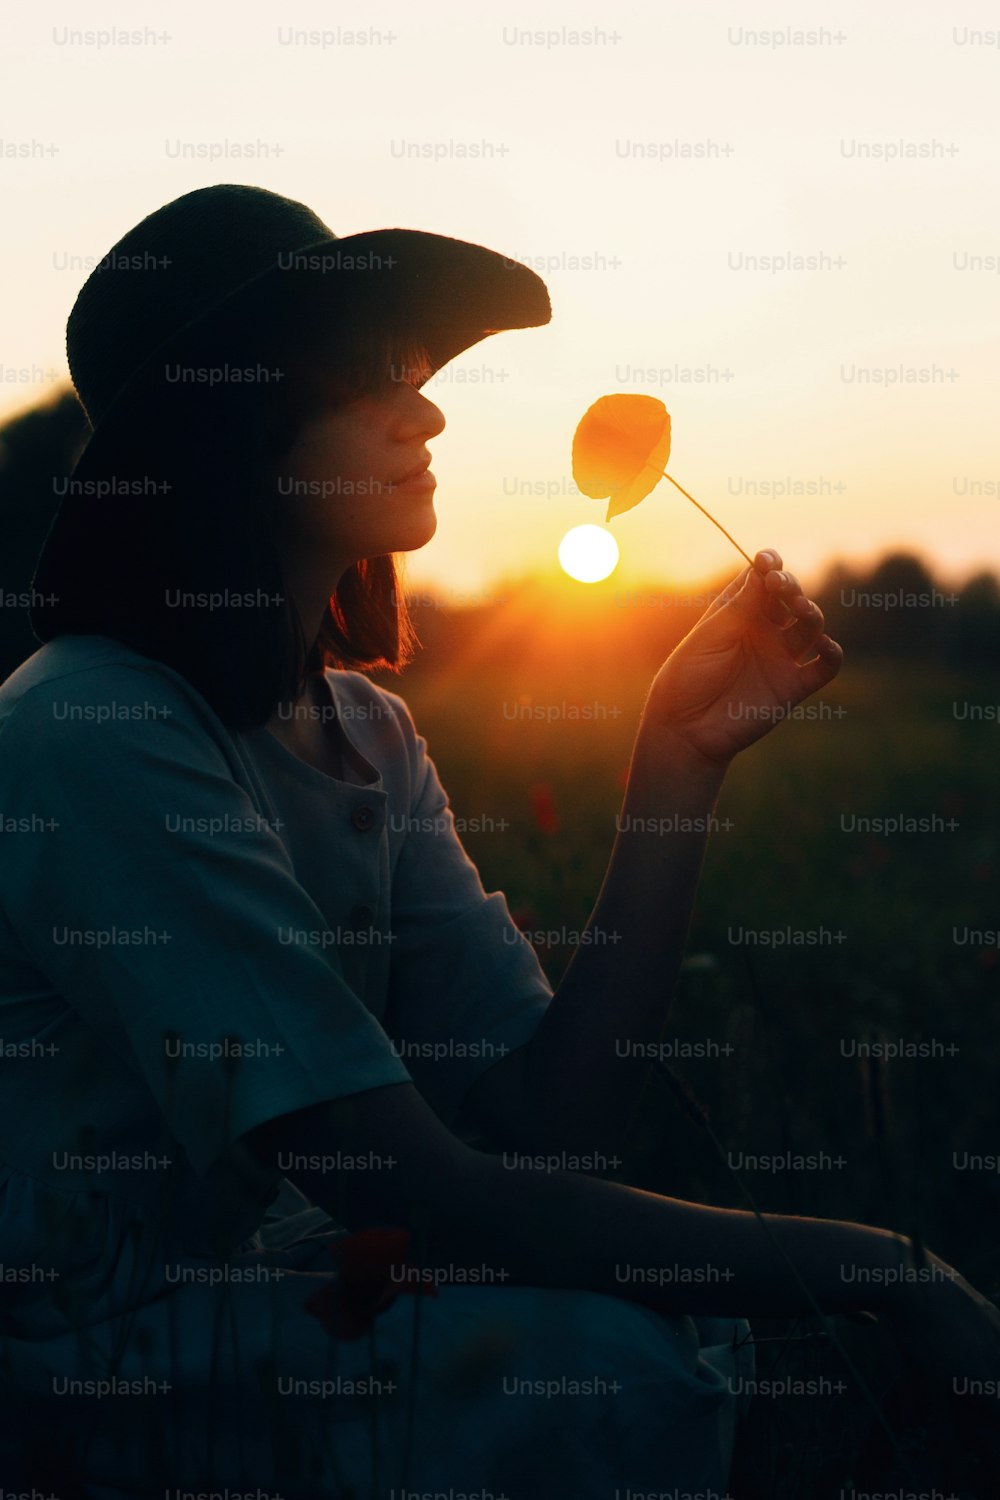 Silueta de una chica elegante en vestido de lino sosteniendo una flor de amapola en el prado a la luz del sol con flores en una cesta de paja rústica. Mujer boho en sombrero relajándose en el campo de la puesta del sol del verano. Atmosférico